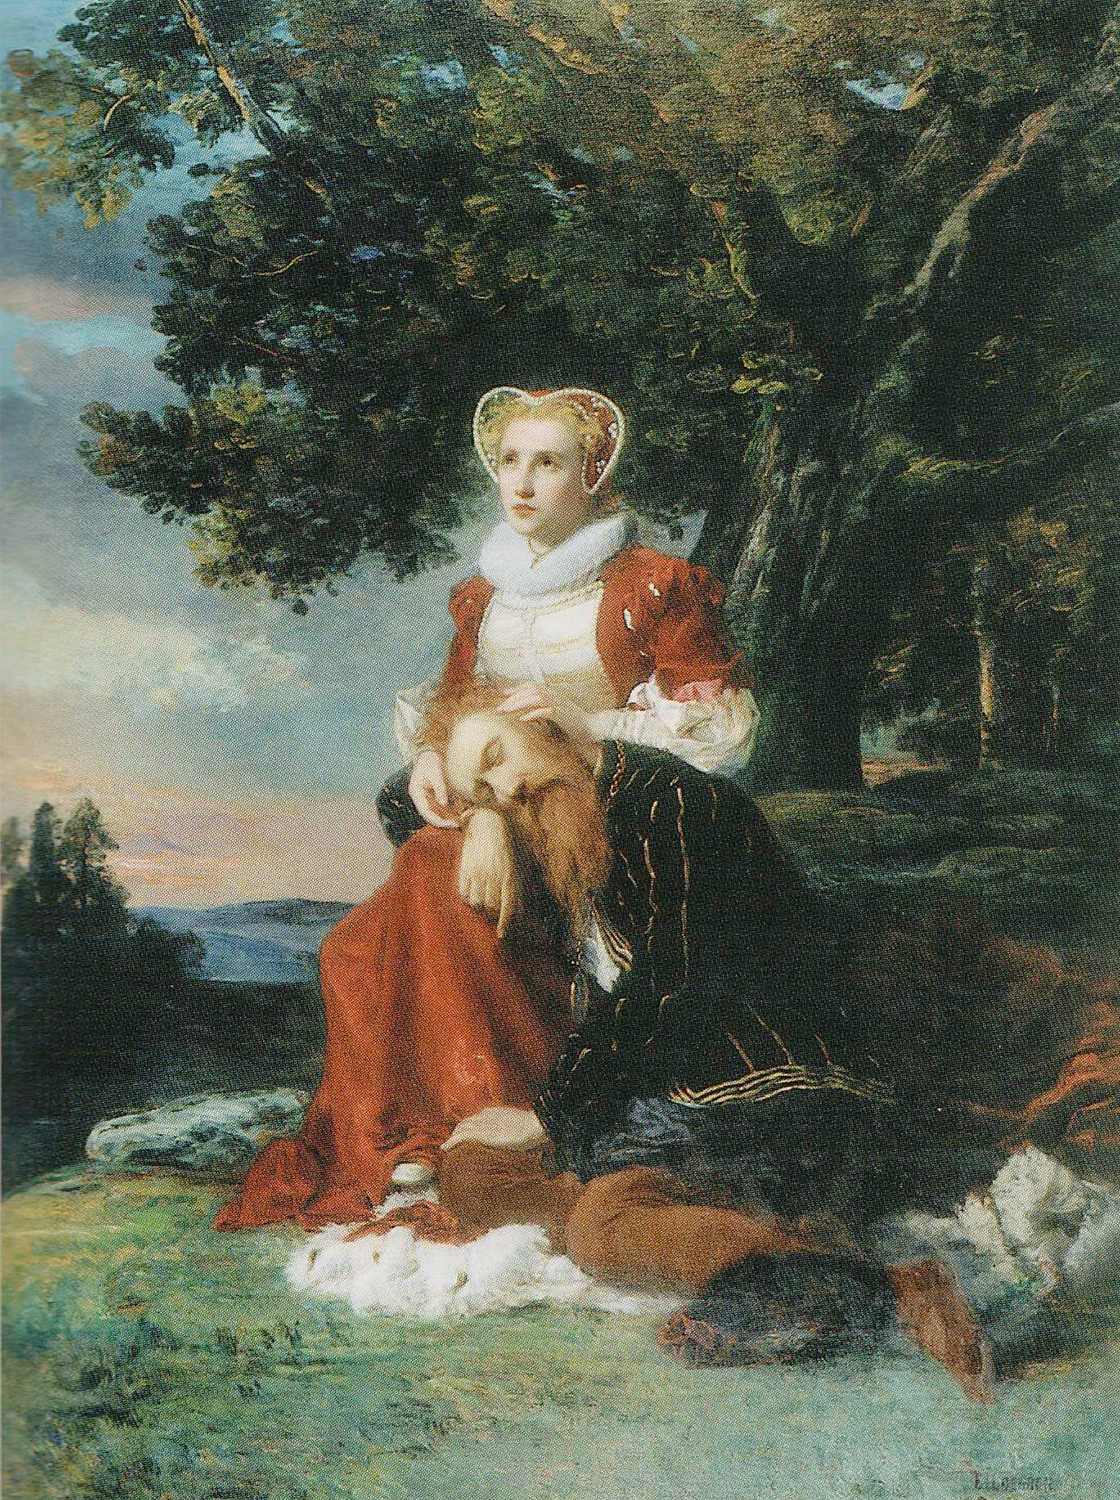 Nainen istuu puun alla punaisessa samettipuvussa, jaloissa mies, joka painanut väsyneen päänsä naisen syliin